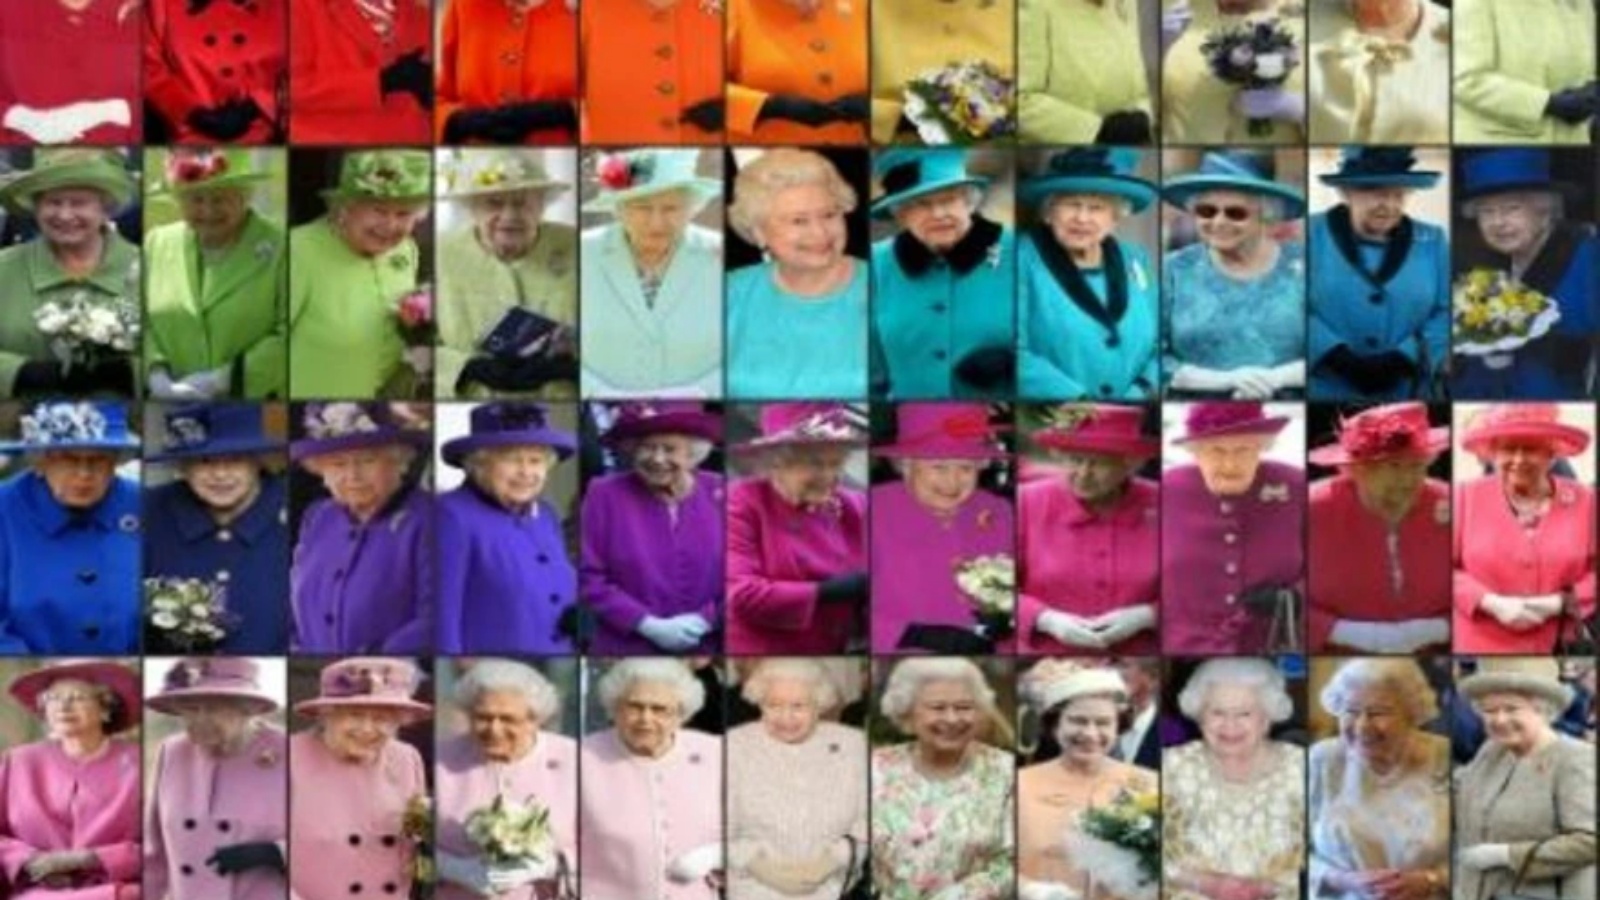 صورة رُكبت في 29 اكتوبر تظهر إطلالات عدة للملكة إليزابيث الثانية التي اعتمدت تدرجات كثيرة من الألوان على مدار العقود